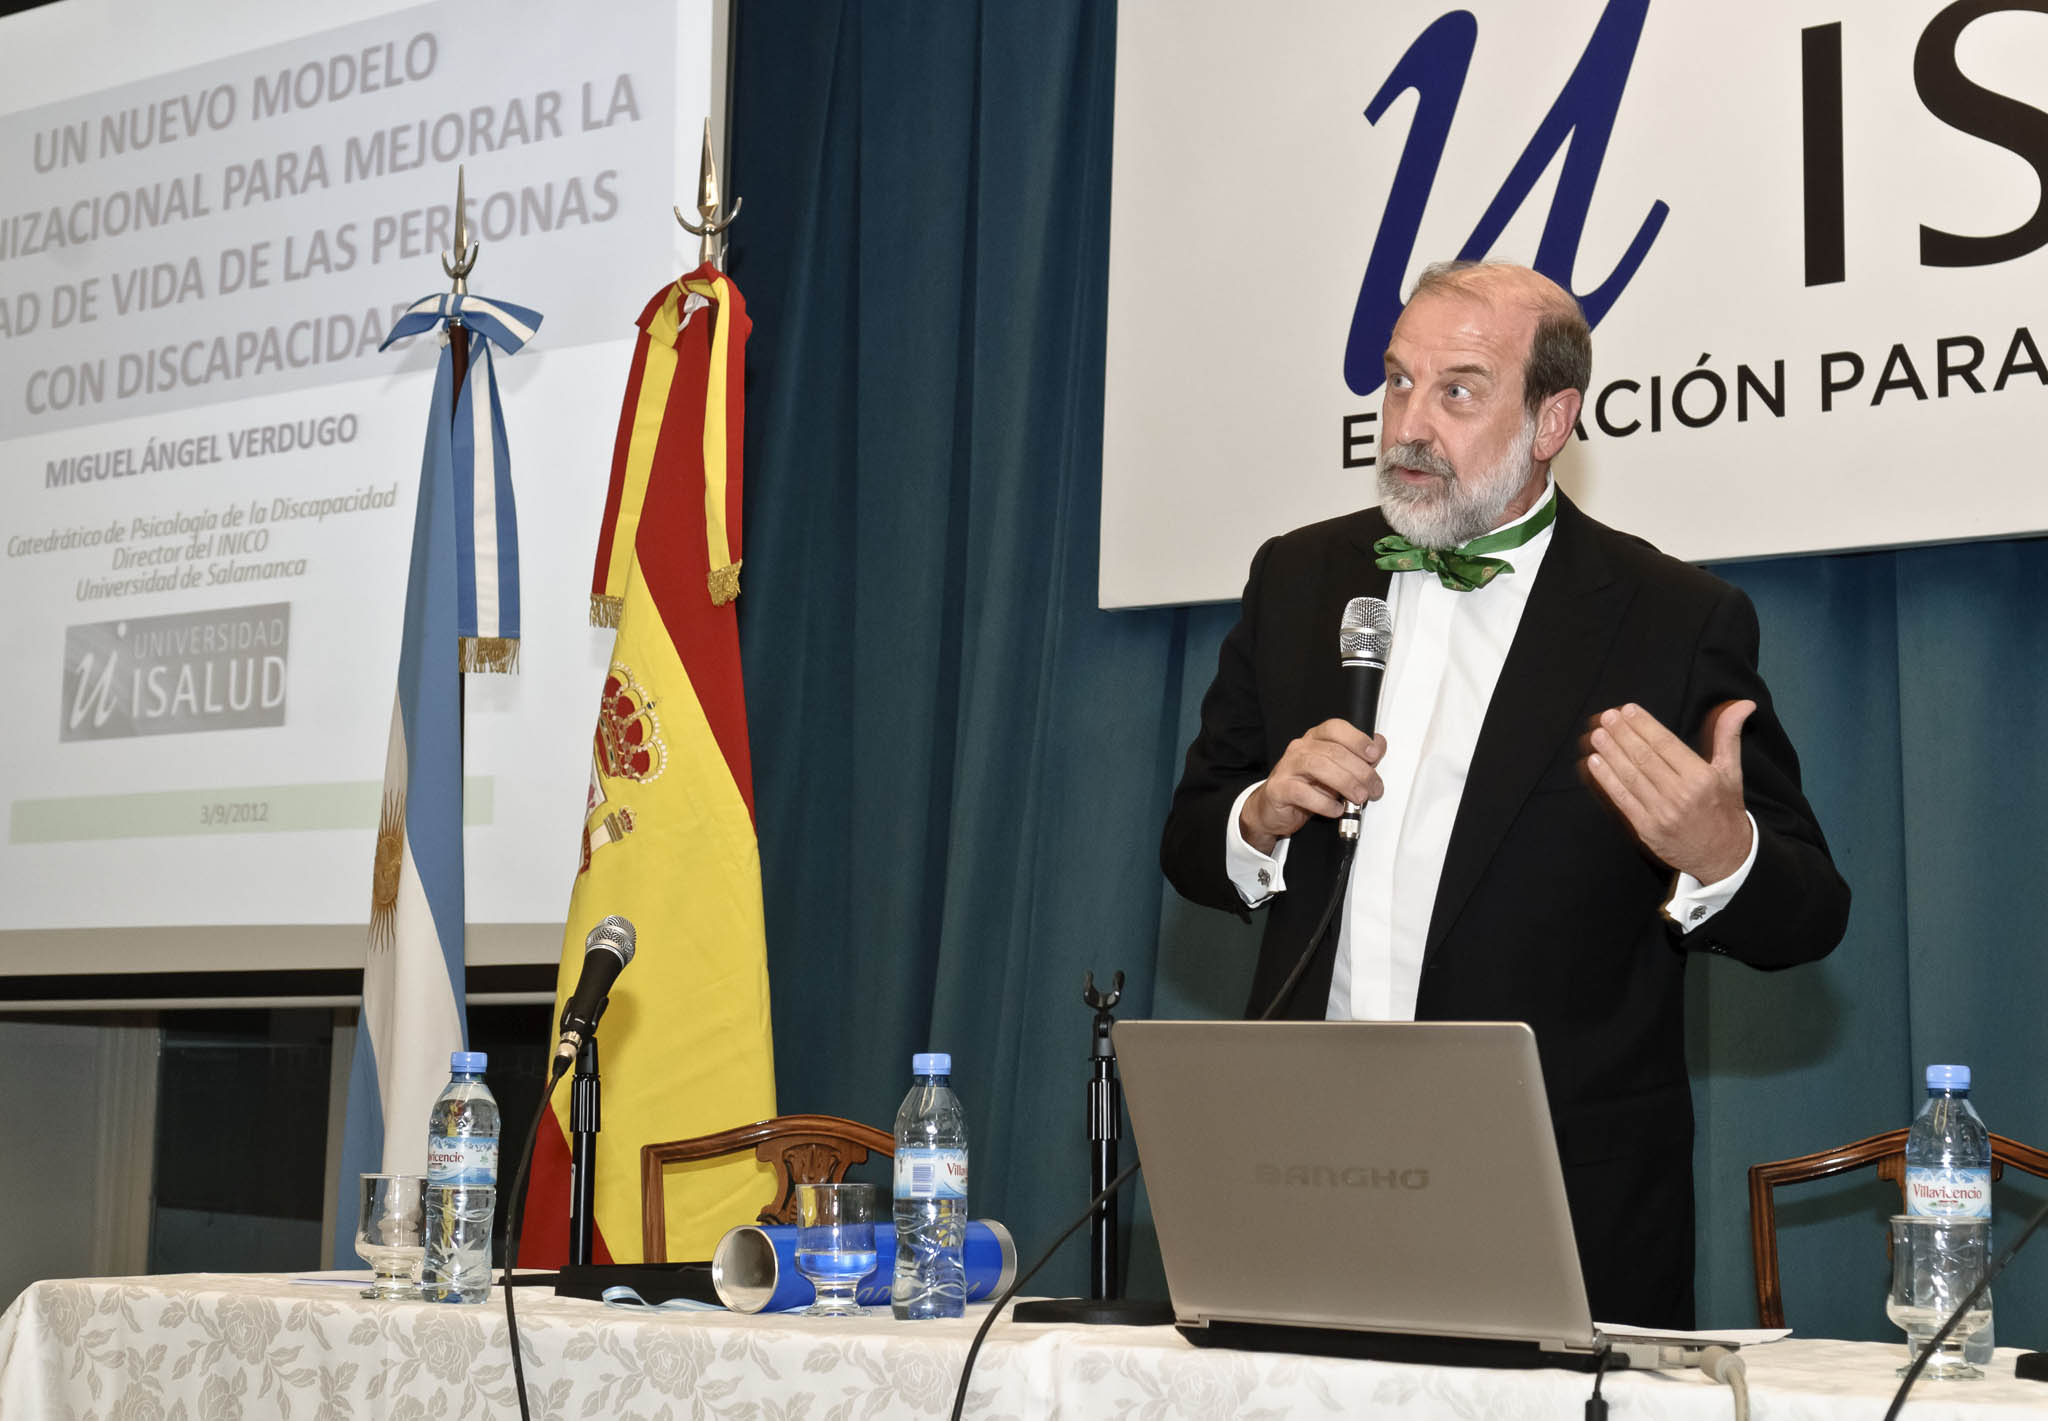 La Universidad ISALUD de Argentina nombra doctor honoris causa al catedrático de la Universidad de Salamanca Miguel Ángel Verdugo